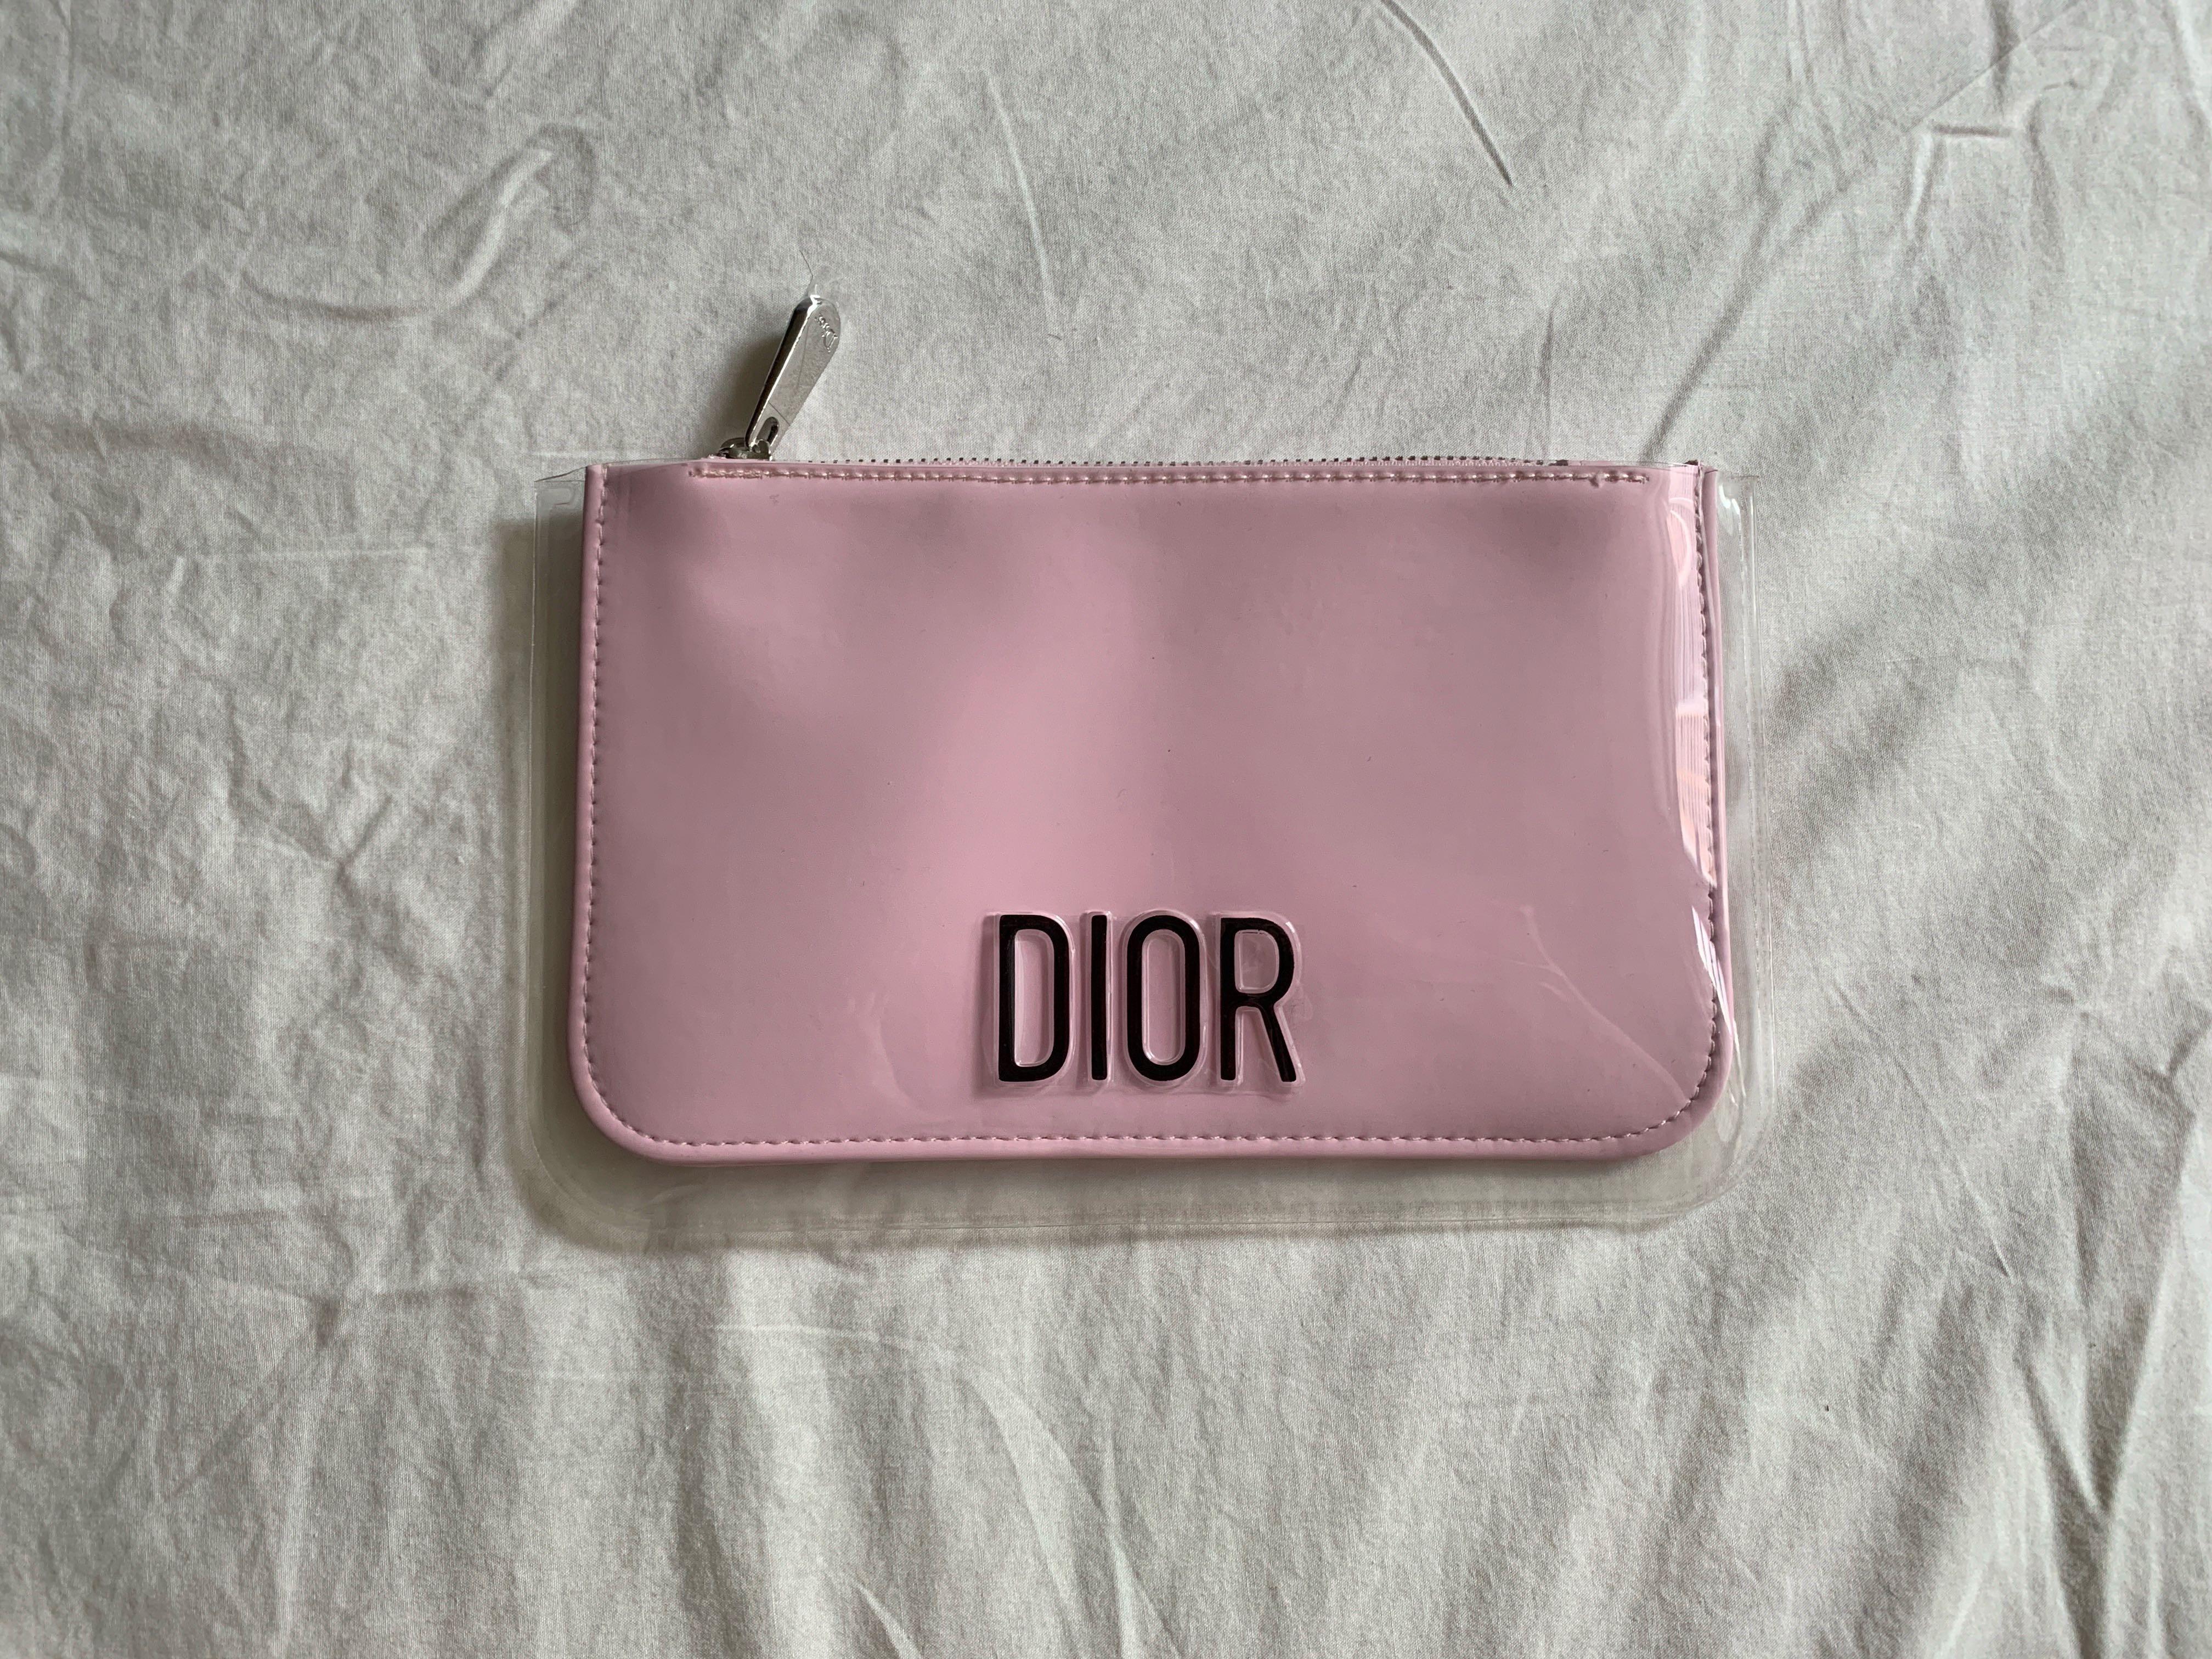 dior makeup bags